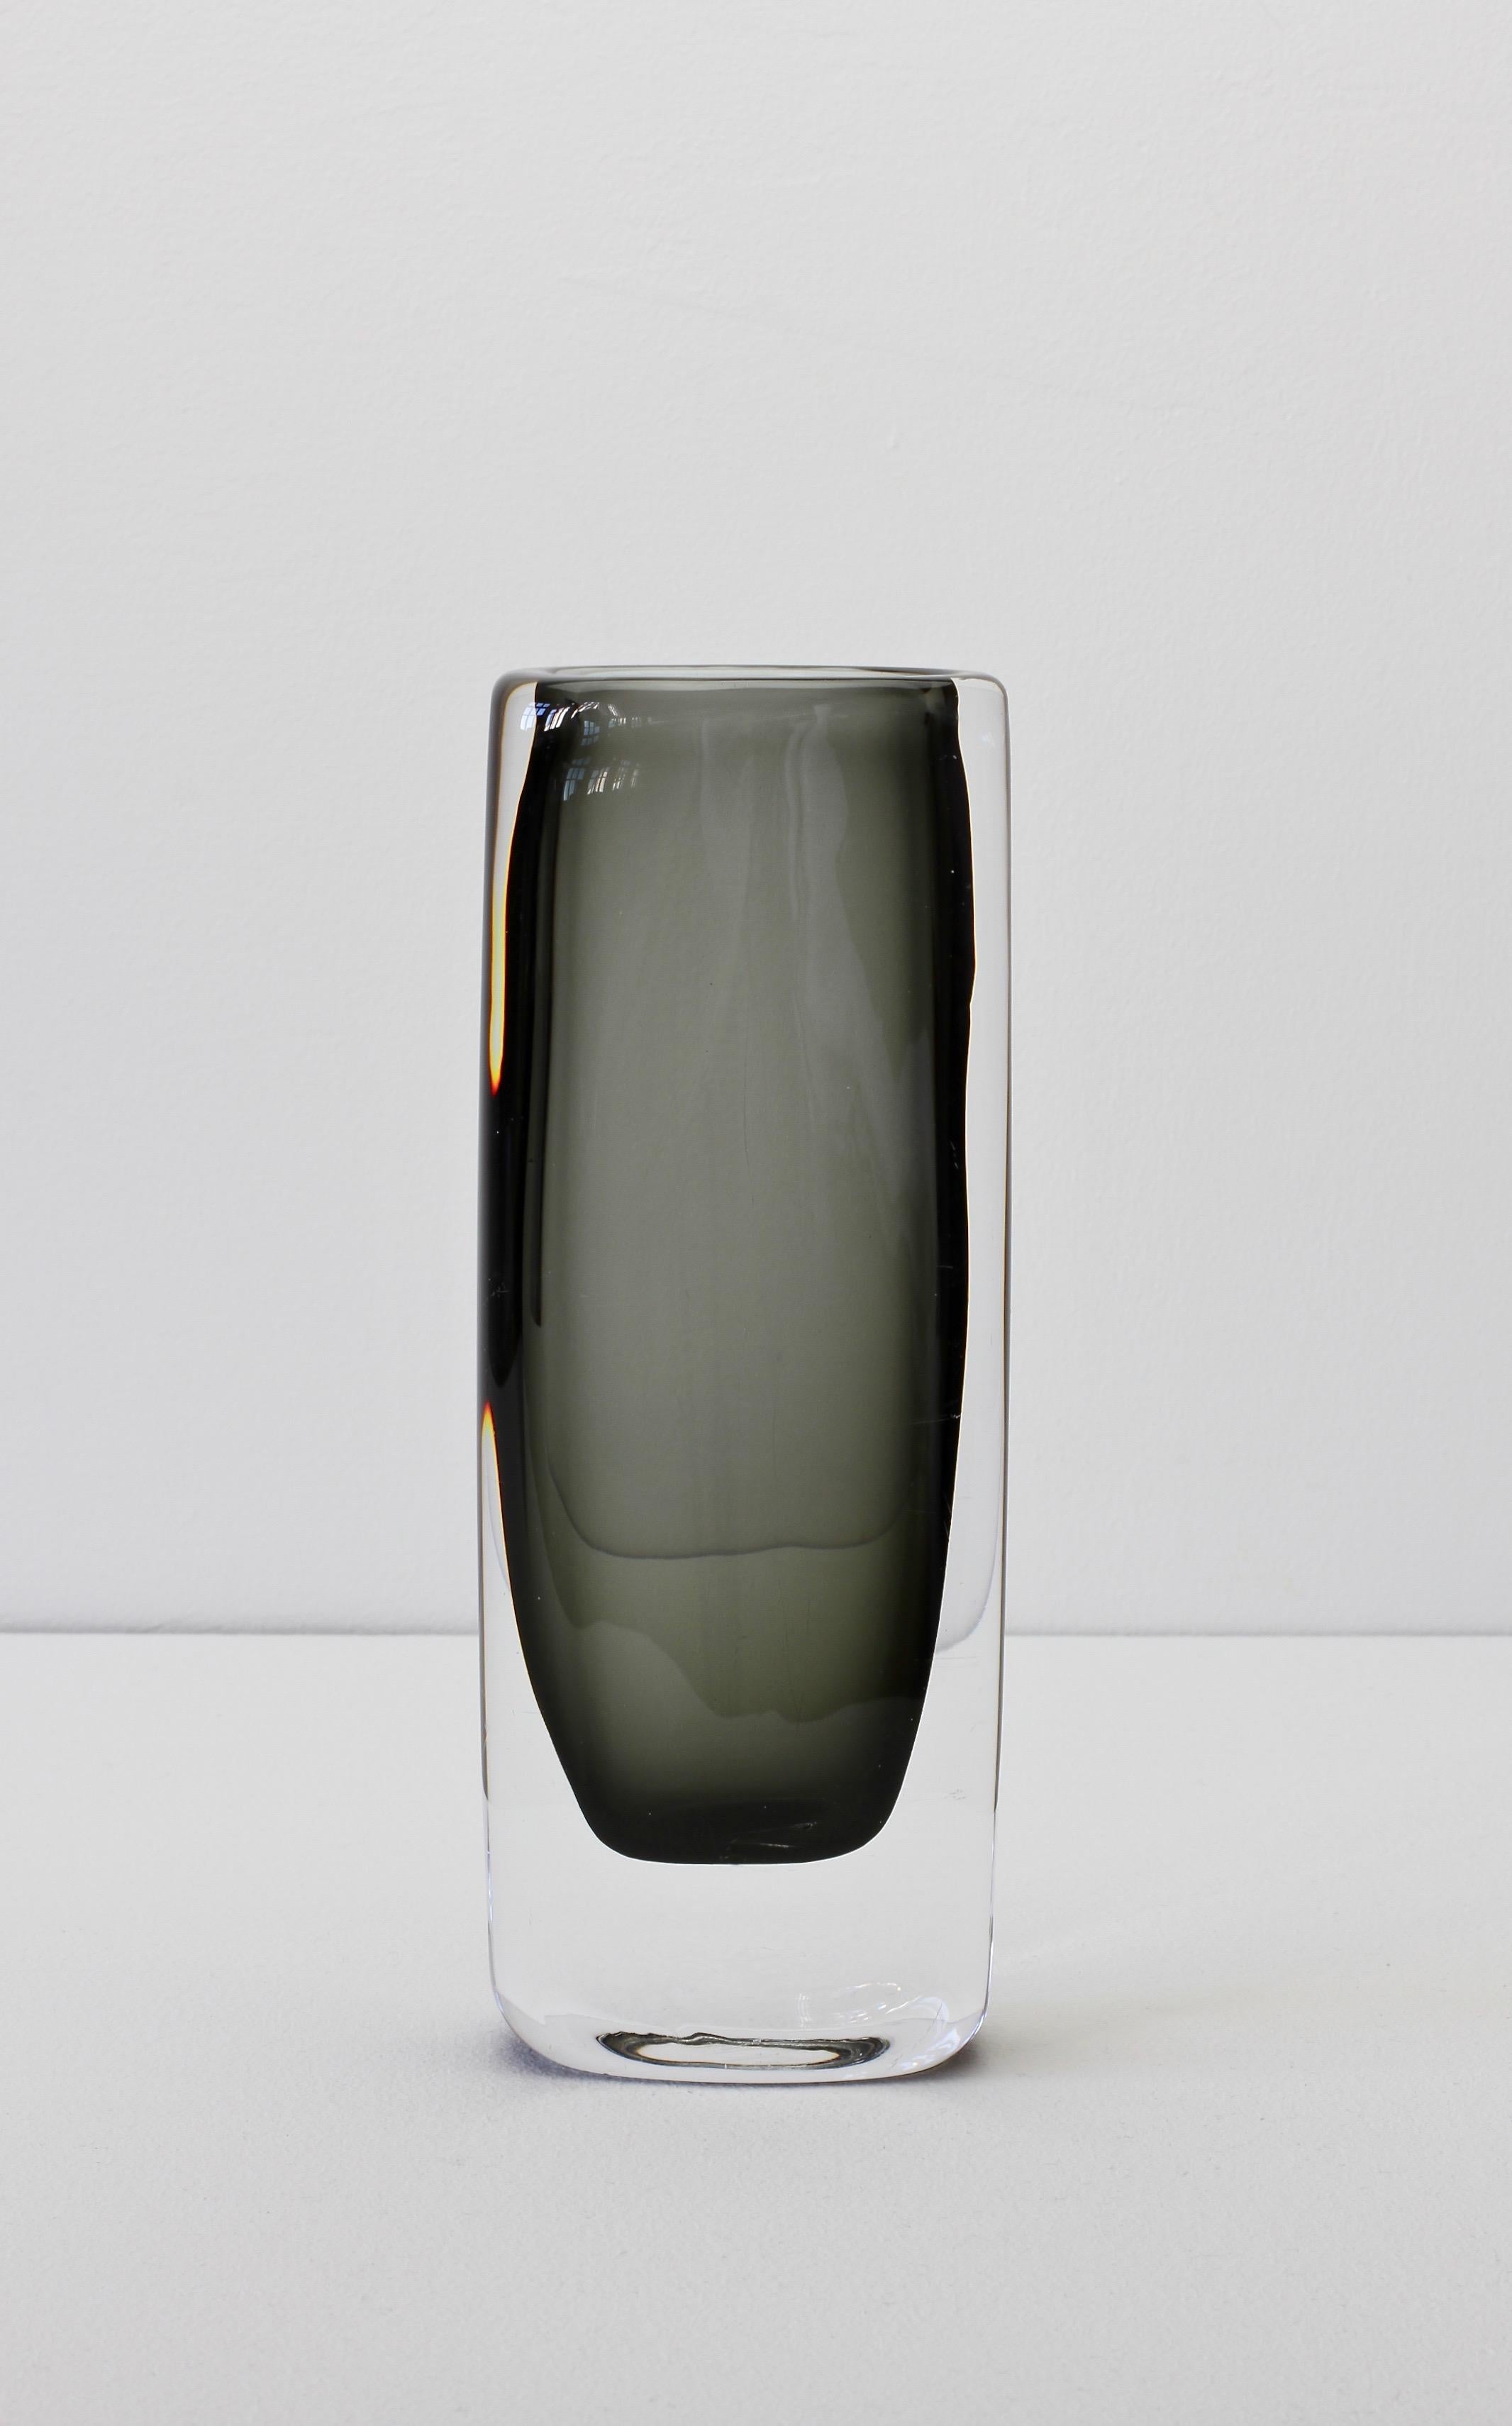 Swedish Tall 1950s Sommerso 'Dusk' Vase Signed by Nils Landberg for Orrefors Glass